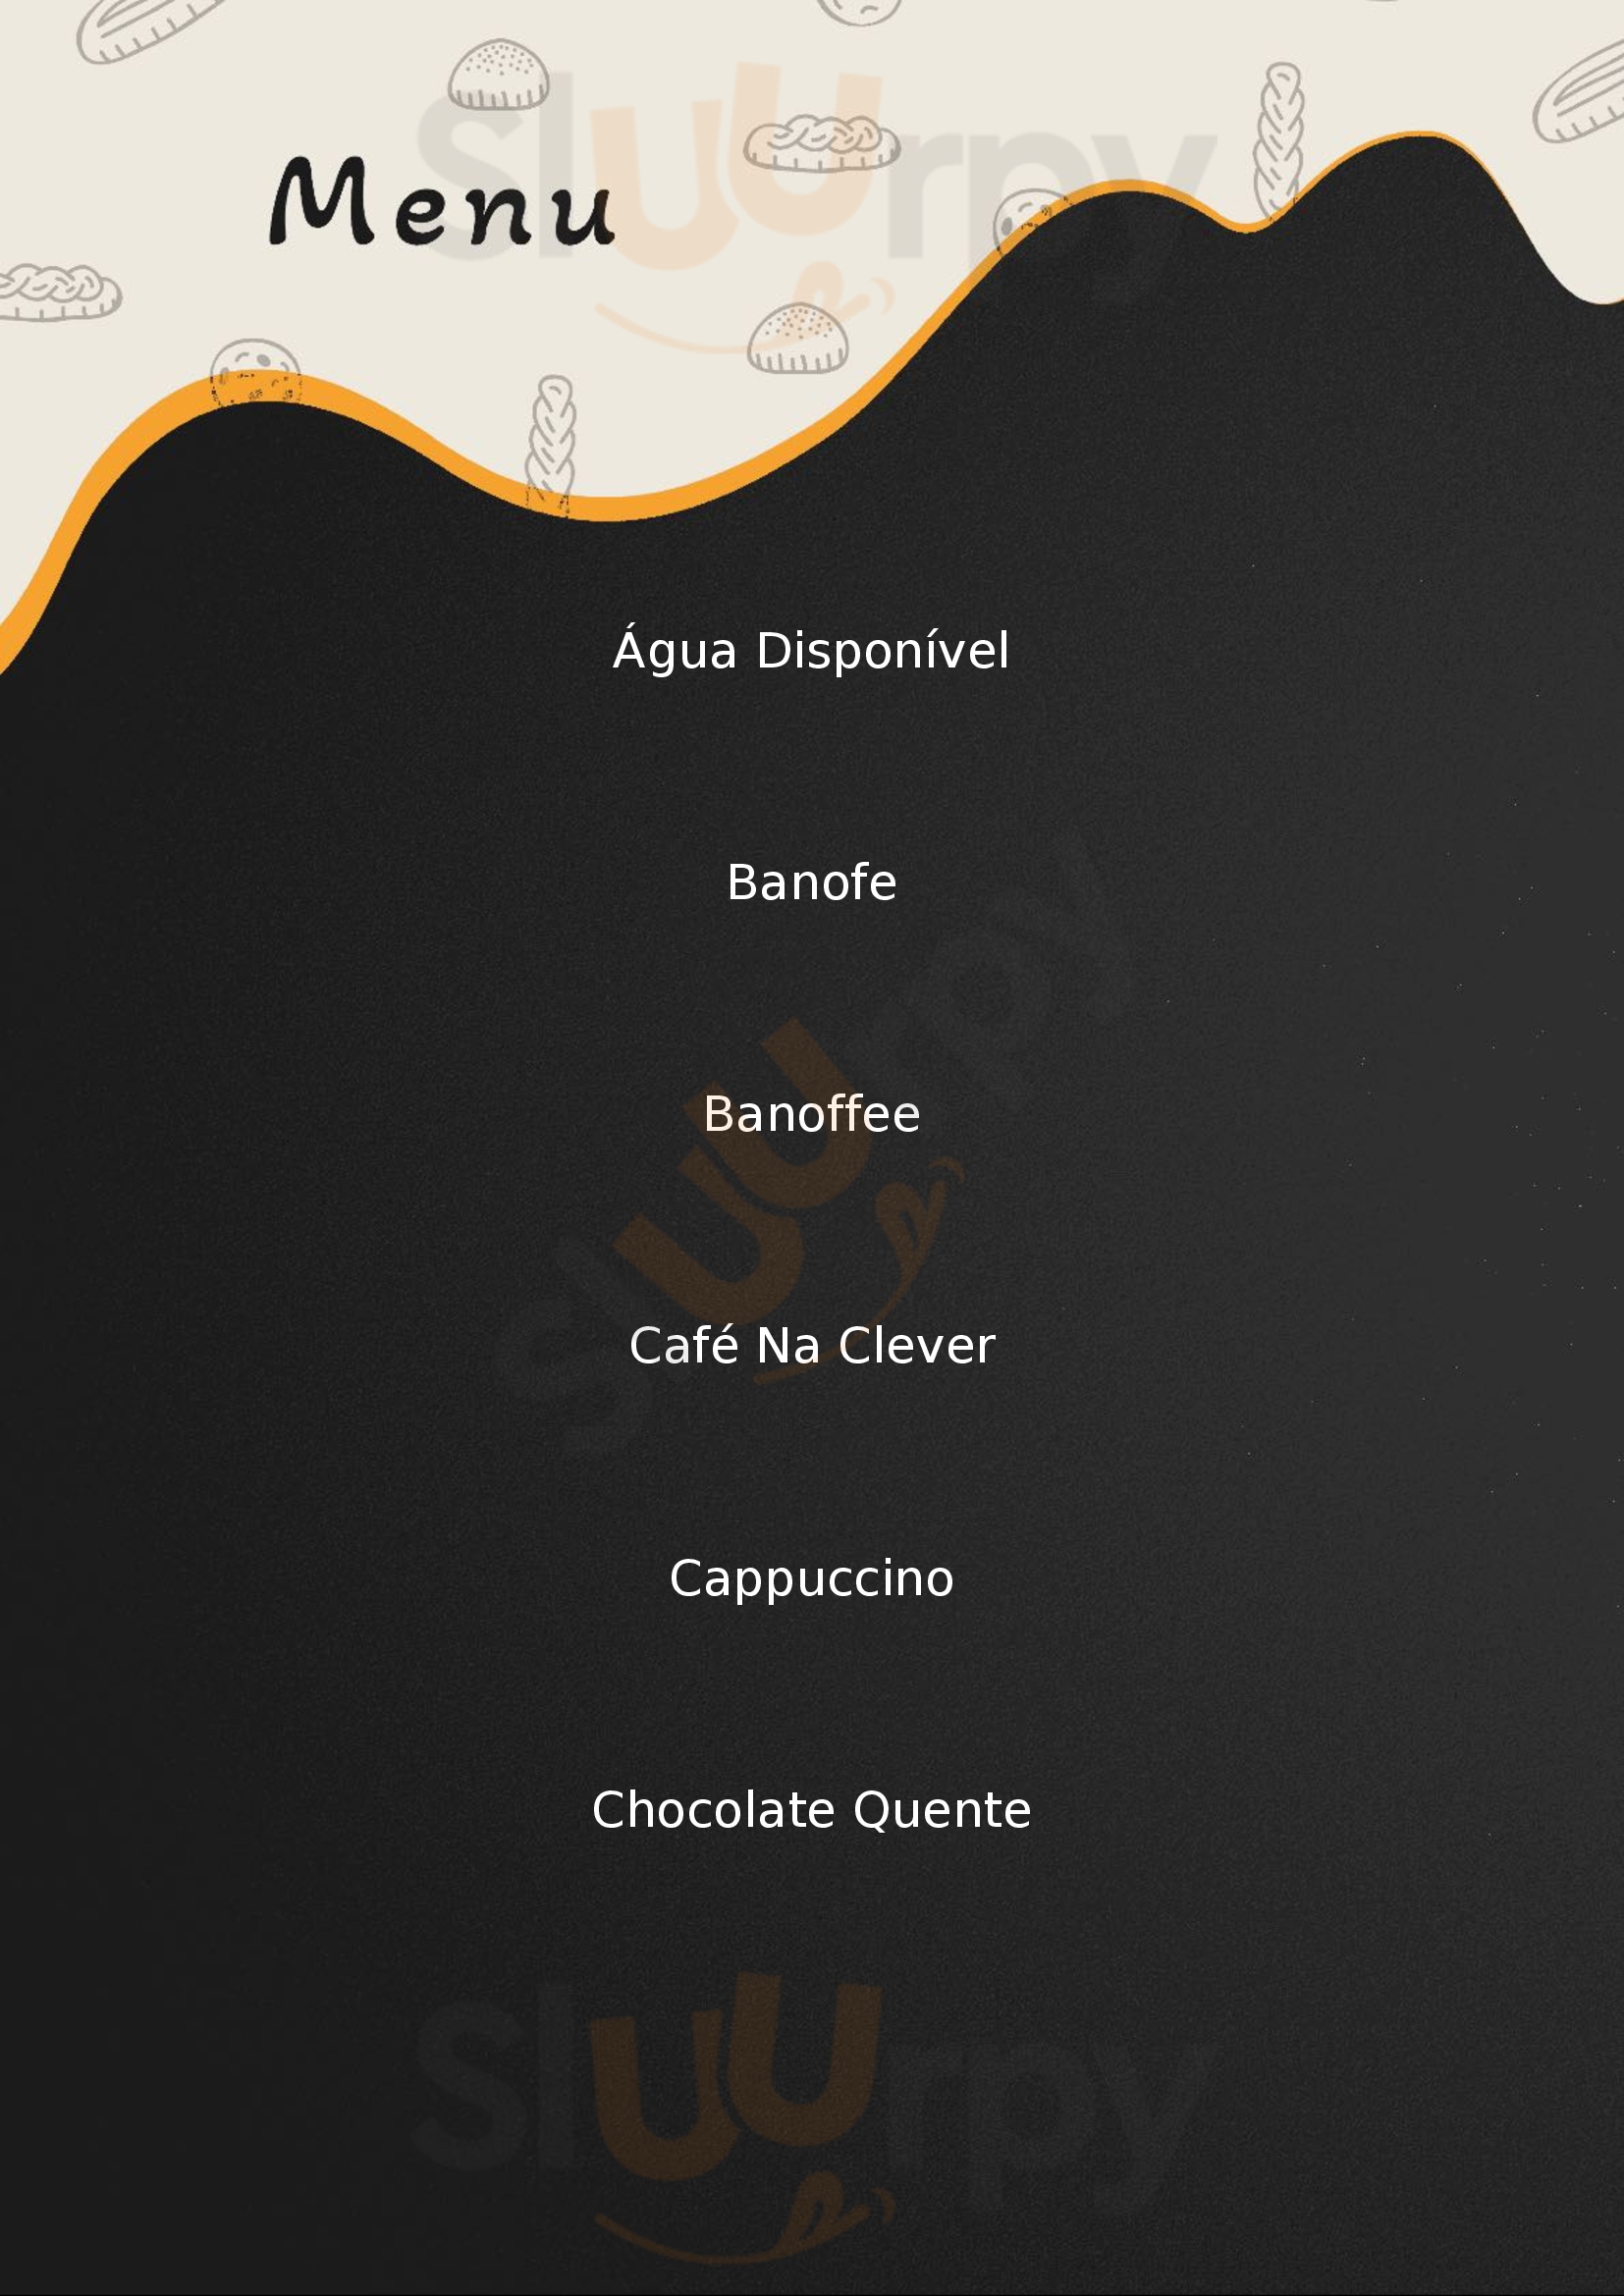 Aviva Café Artesanal Londrina Menu - 1